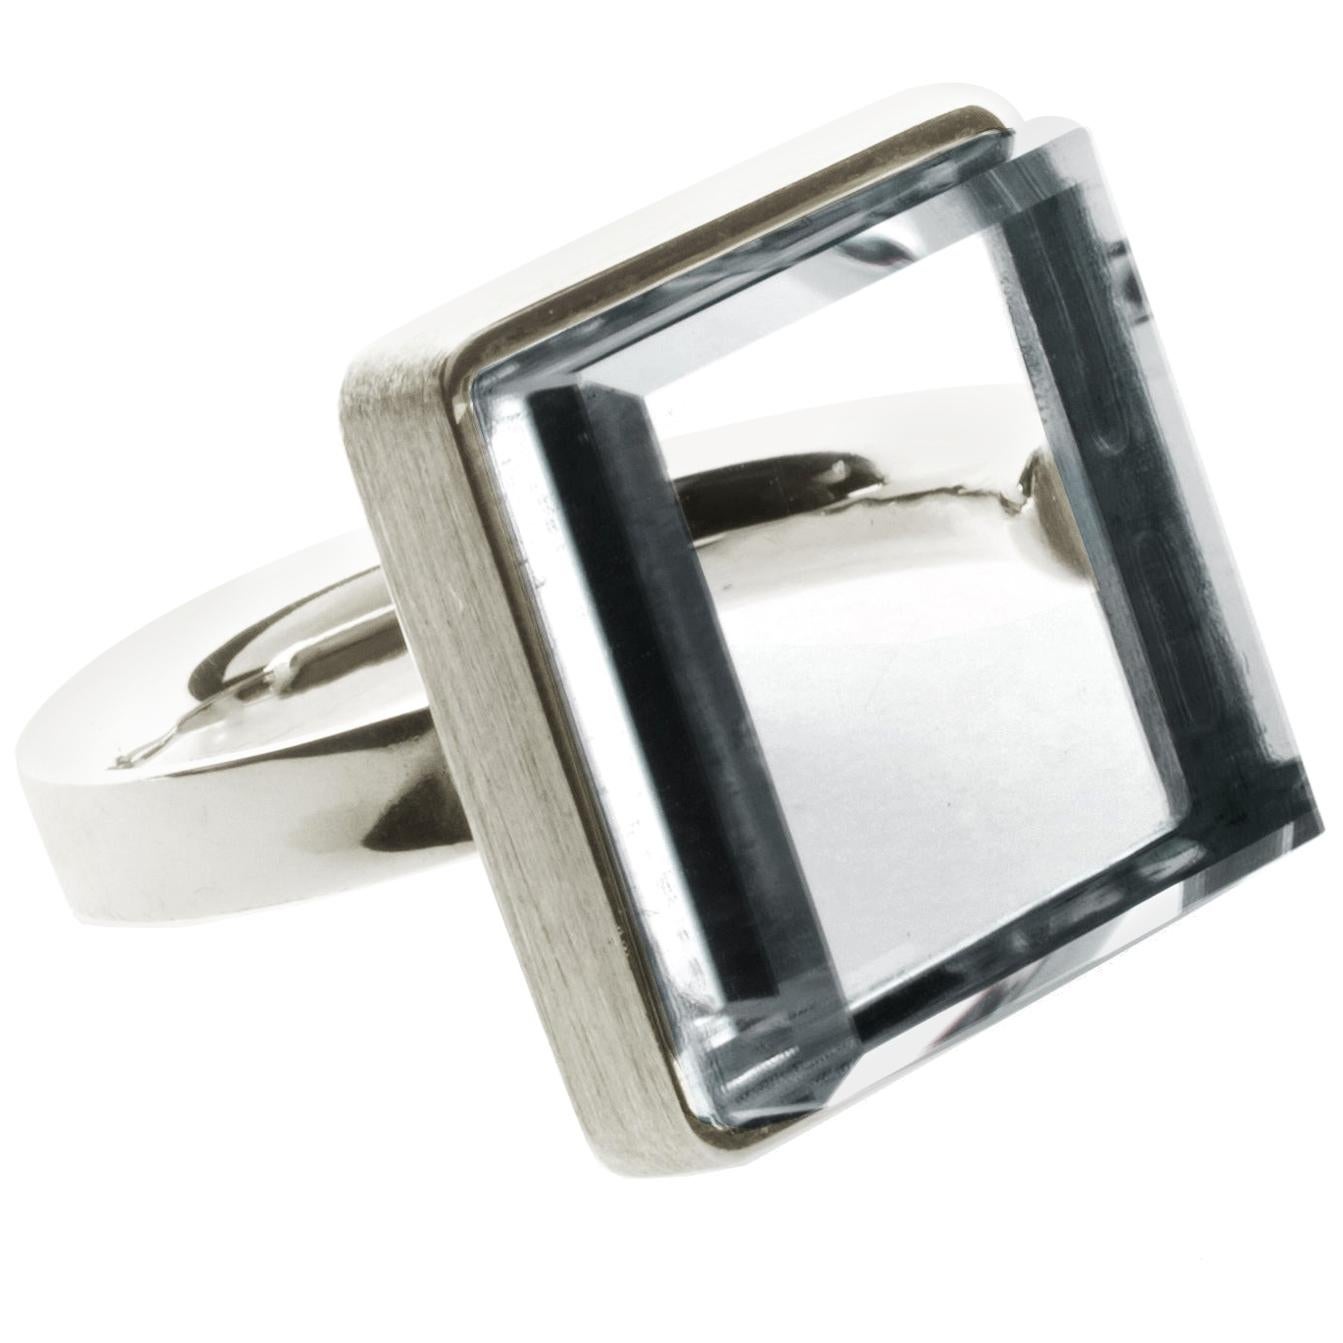 Featured in Vogue Eighteen Karat White Gold Art Deco Style Ring with Quartz